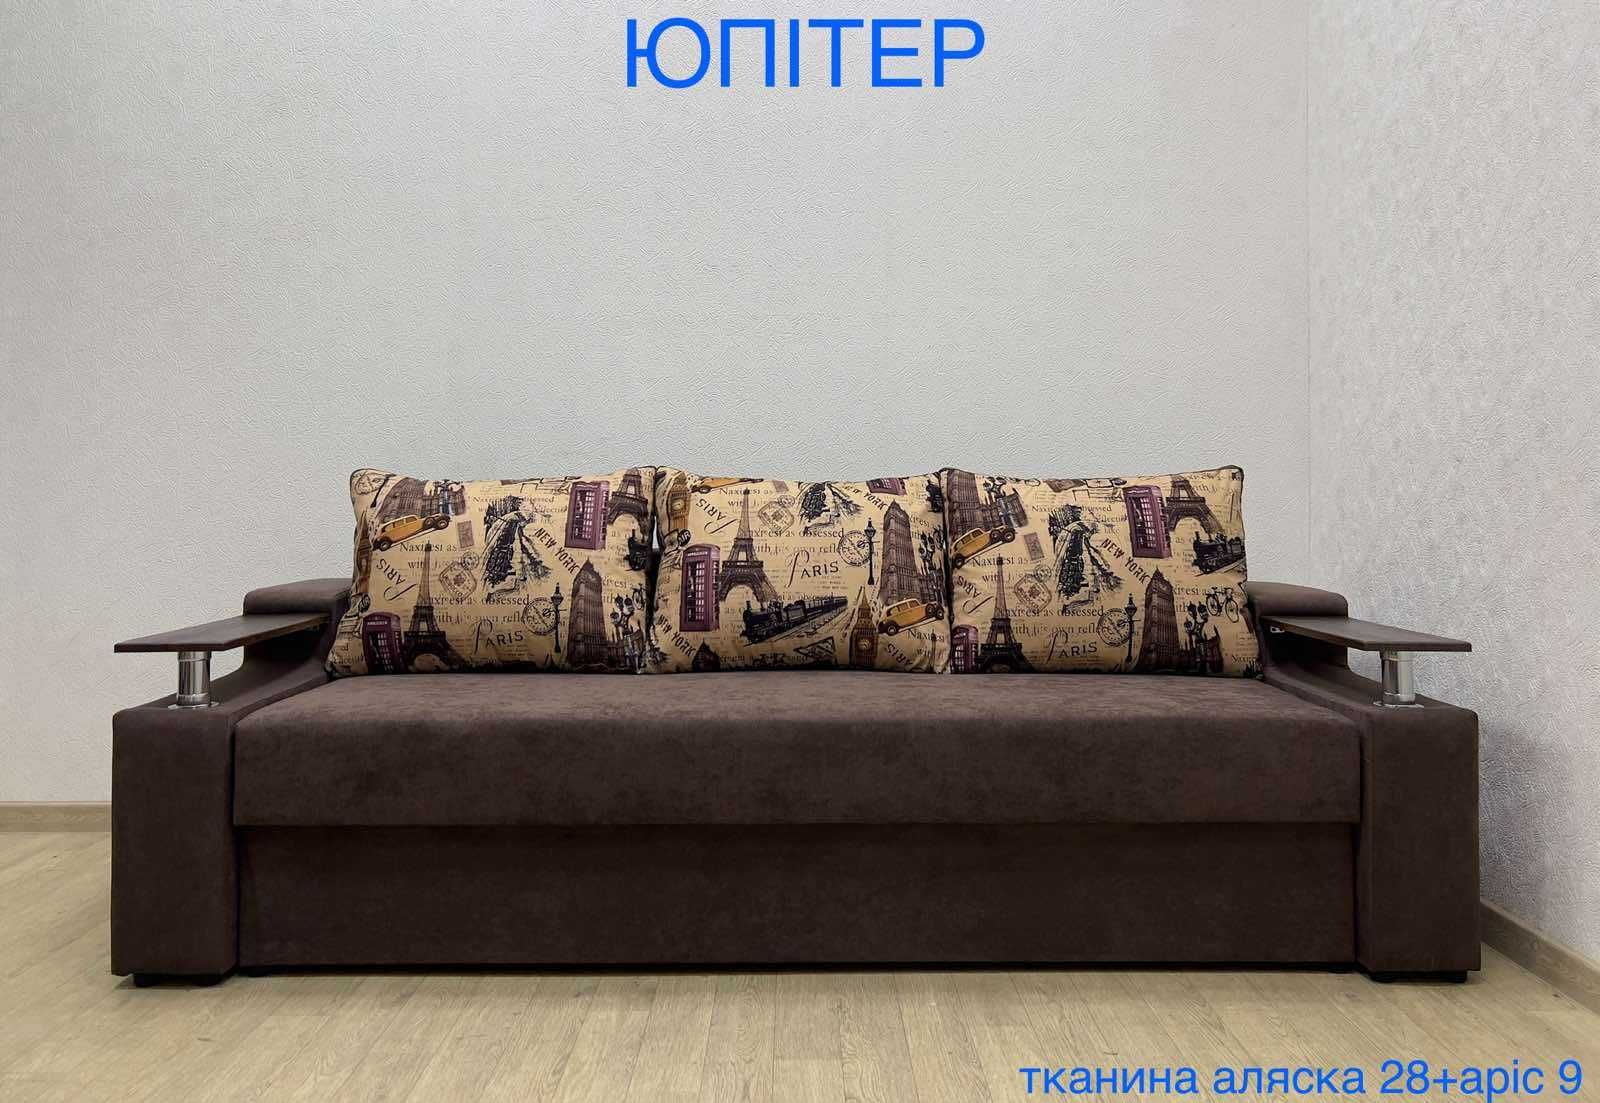 Недорогой раскладной диван  Юпитер с официальной гарантией